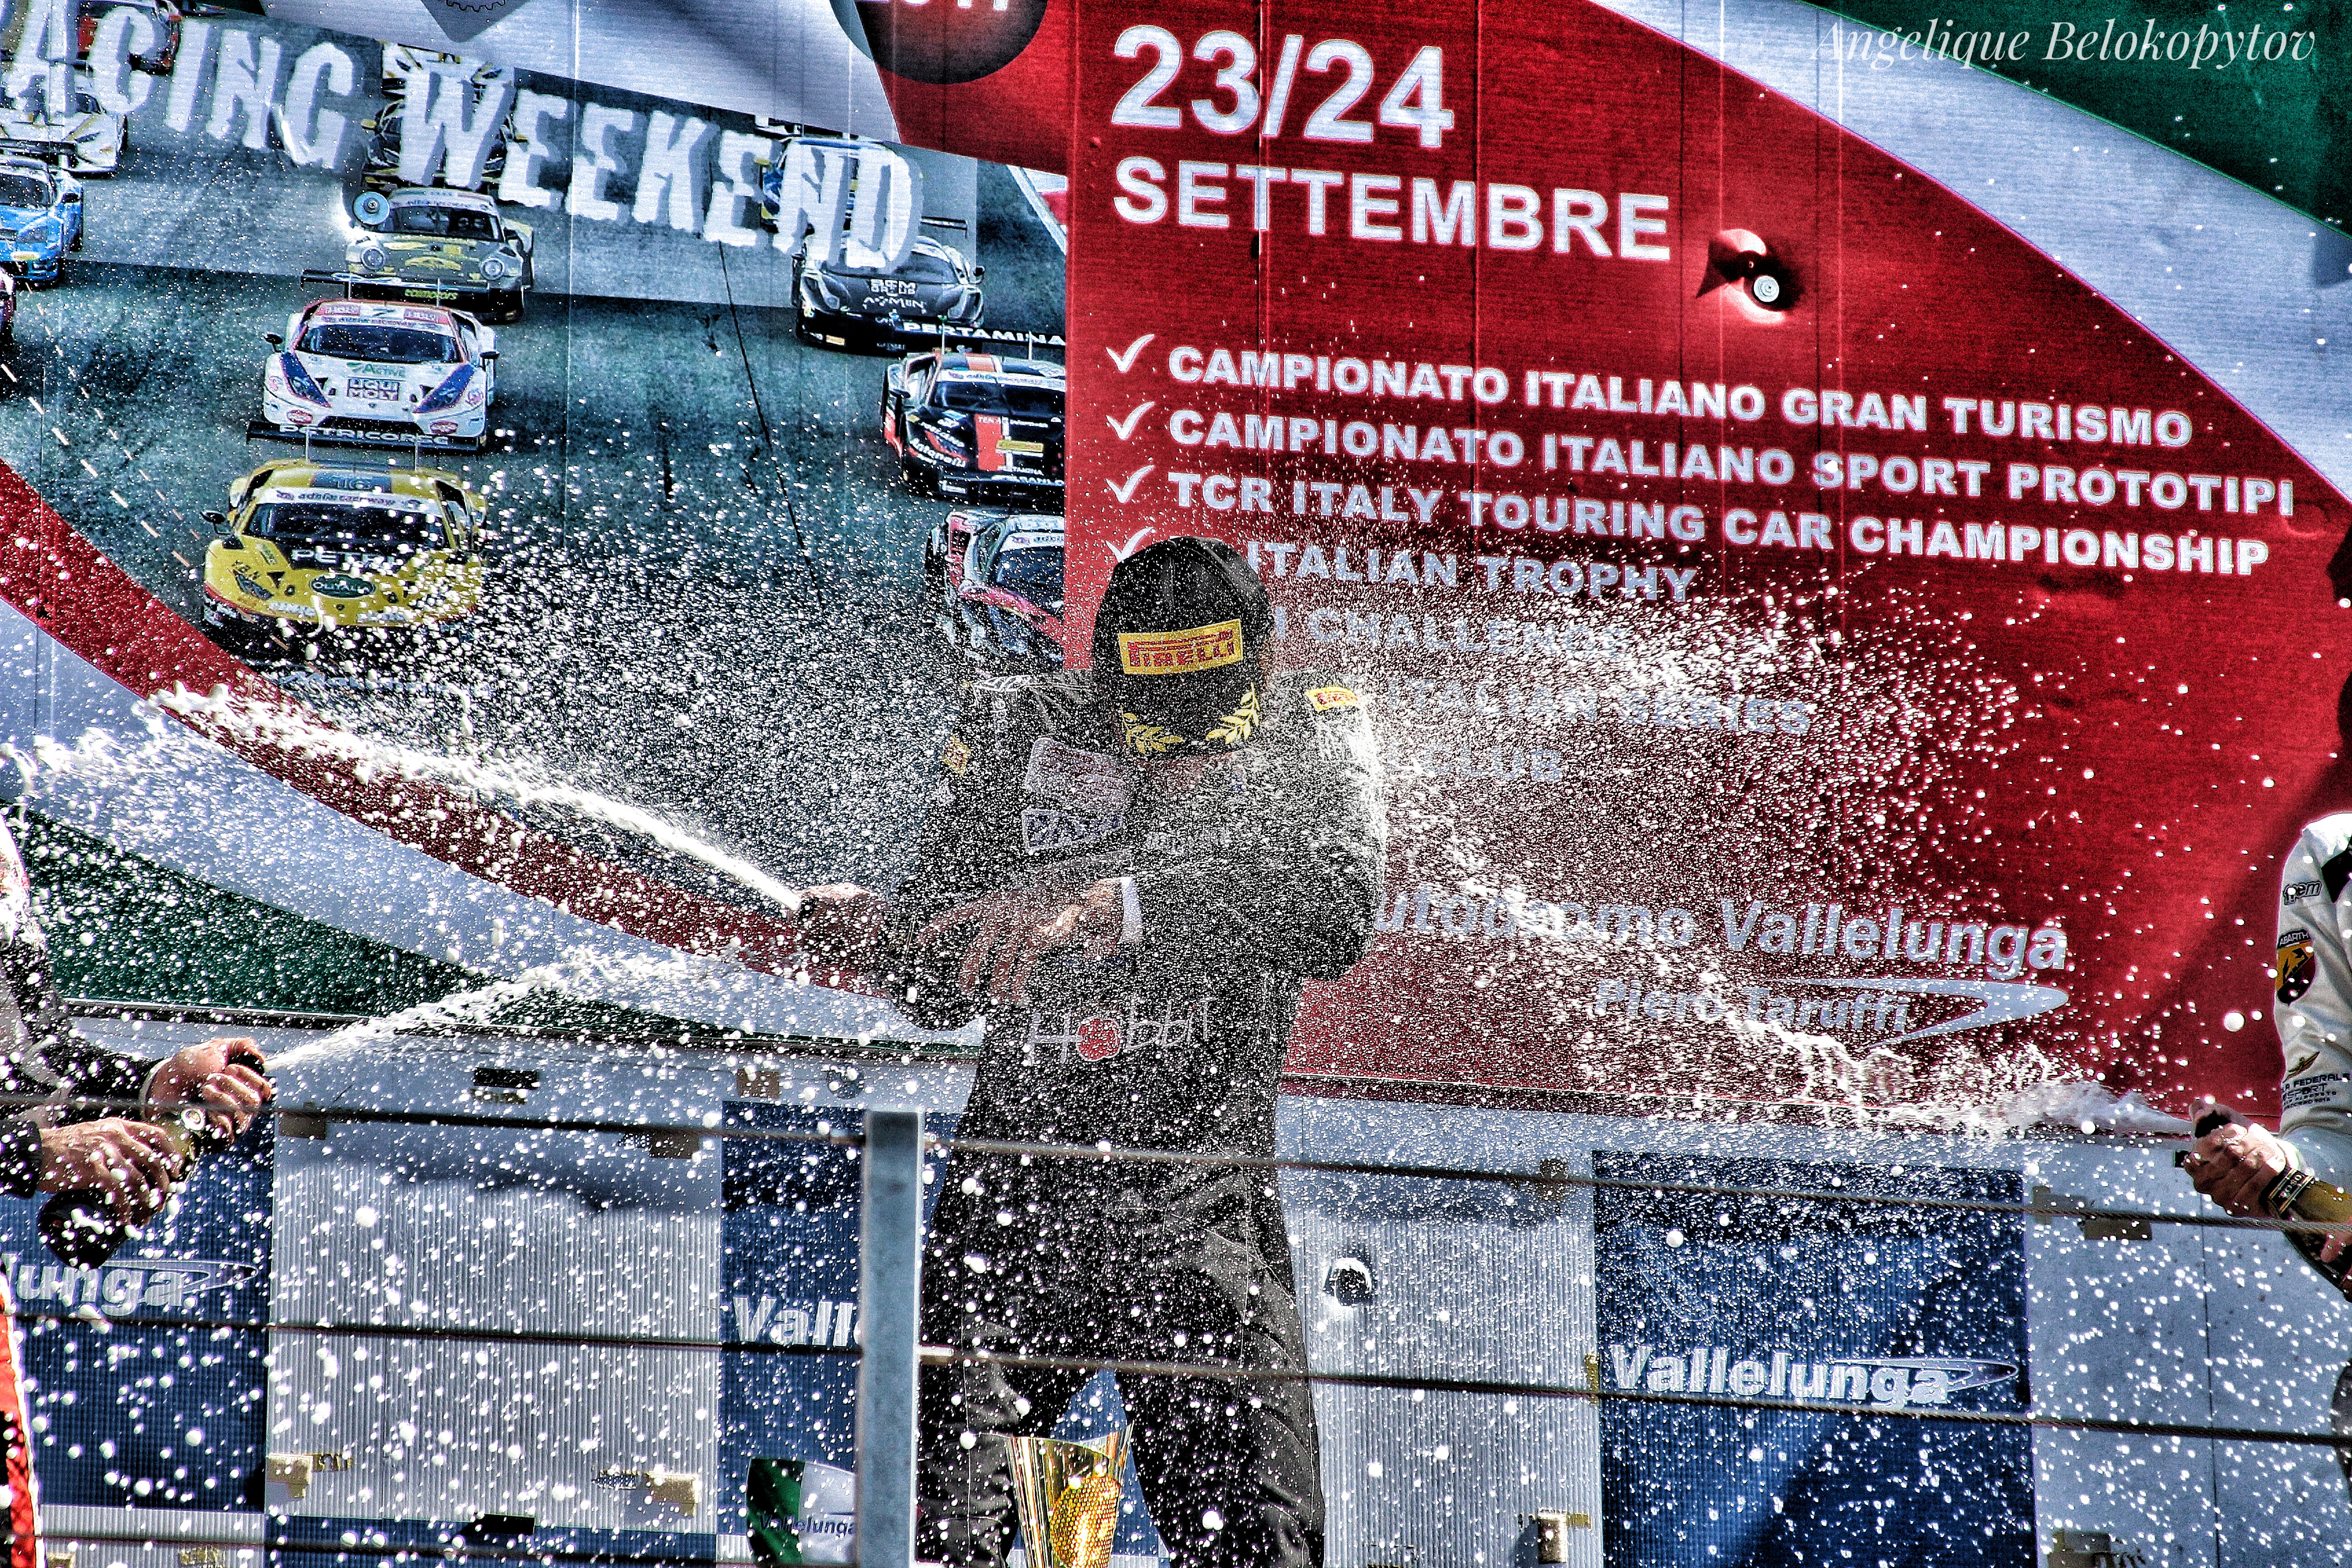 Andrea Cola winning race 1 ©Angelique Belokopytov